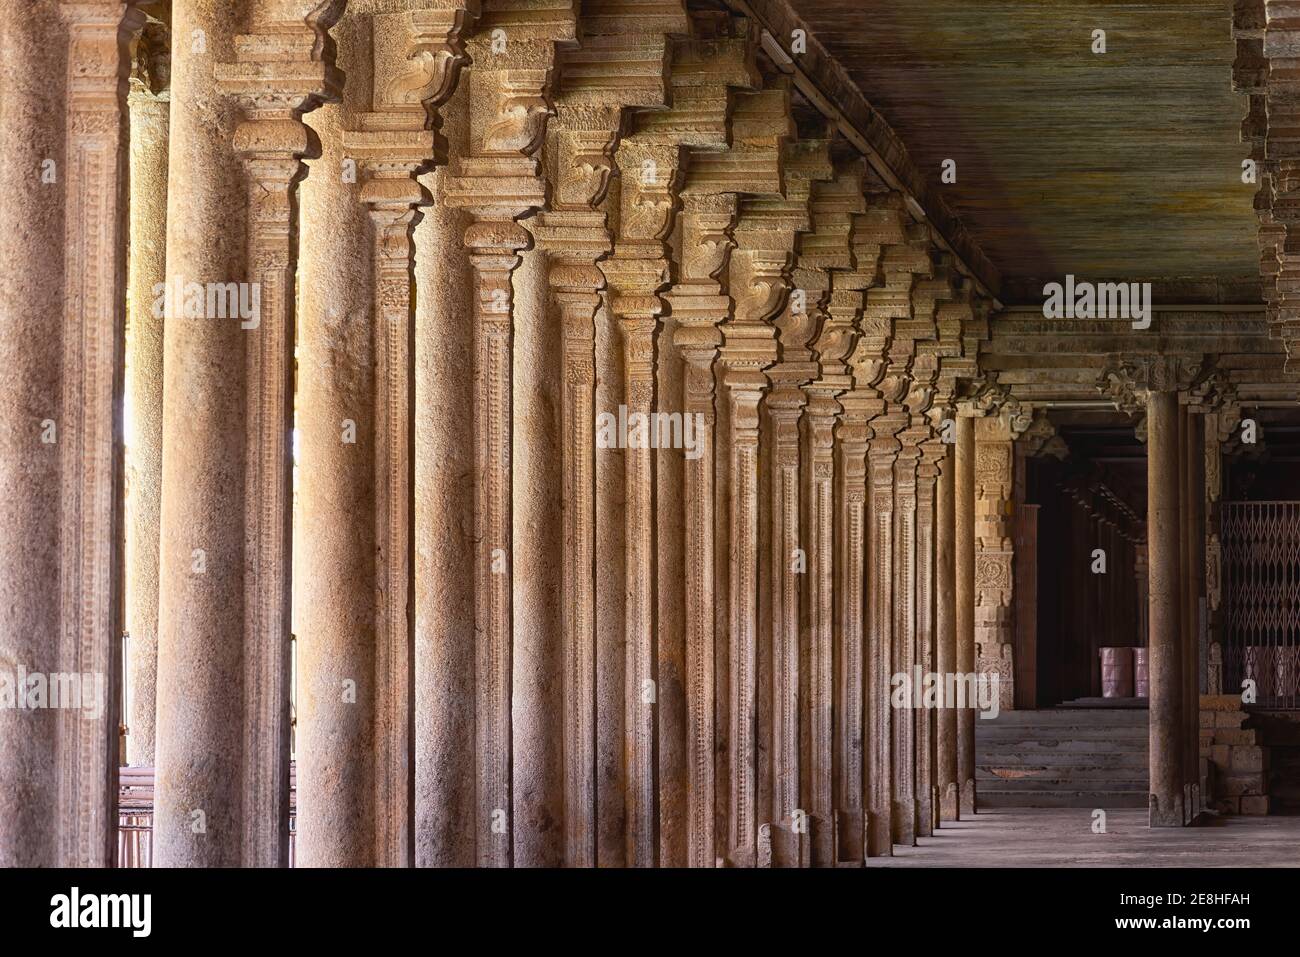 Colonnade dans le temple de Sri Ranganathaswamy, Inde. Le Sri Ranganathaswamy est un temple hindou construit dans le style architectural Dravidien Banque D'Images